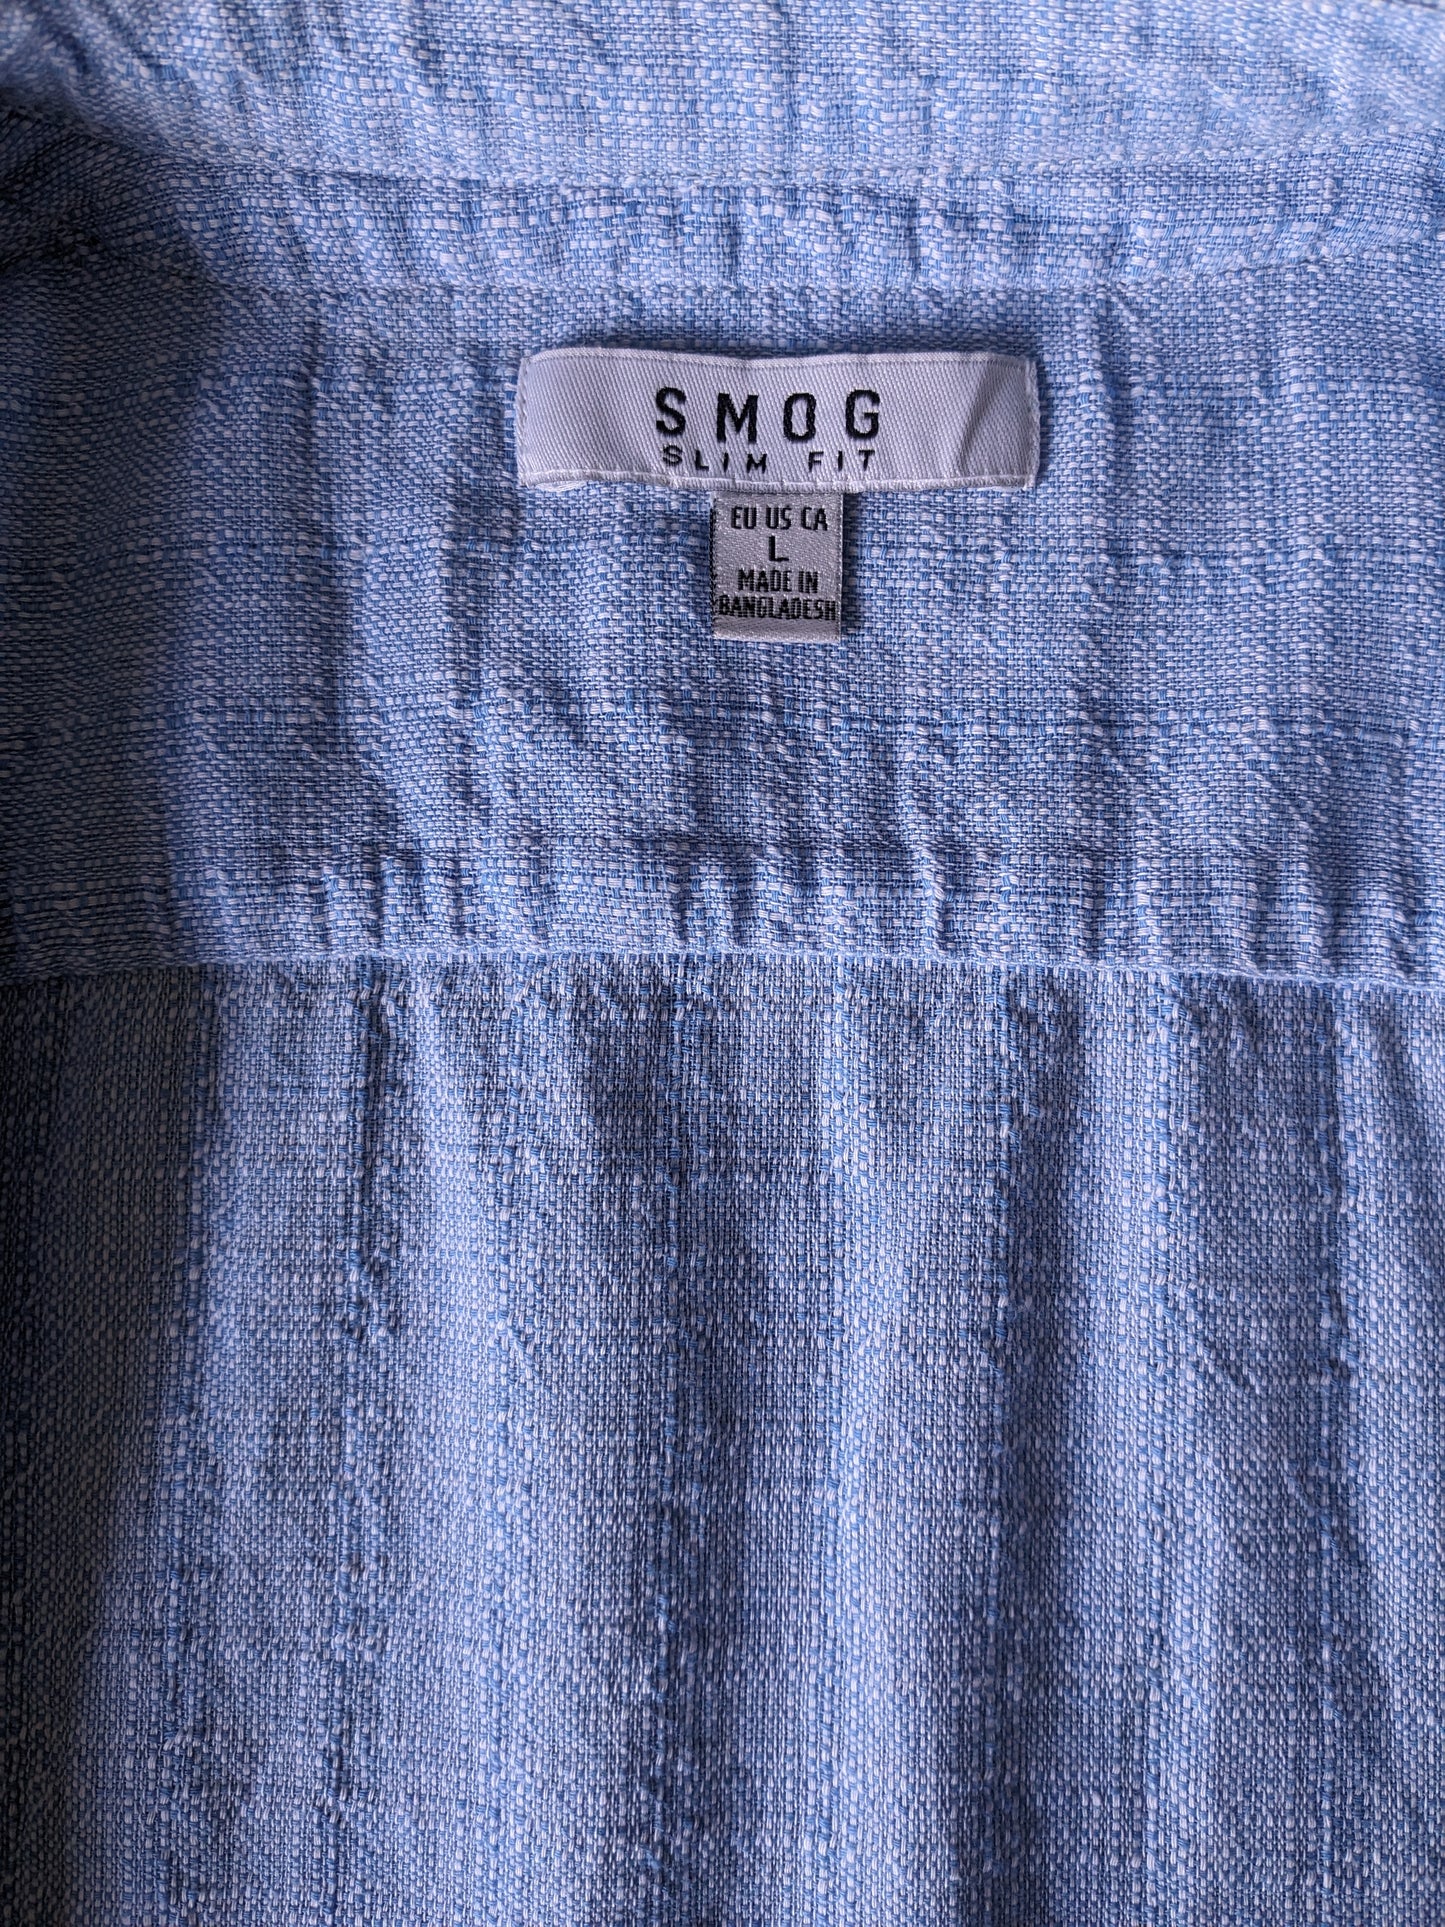 Chemise de smog avec mao / agriculteurs / collier droit. Bleu mélangé. Taille L. Slim Fit.